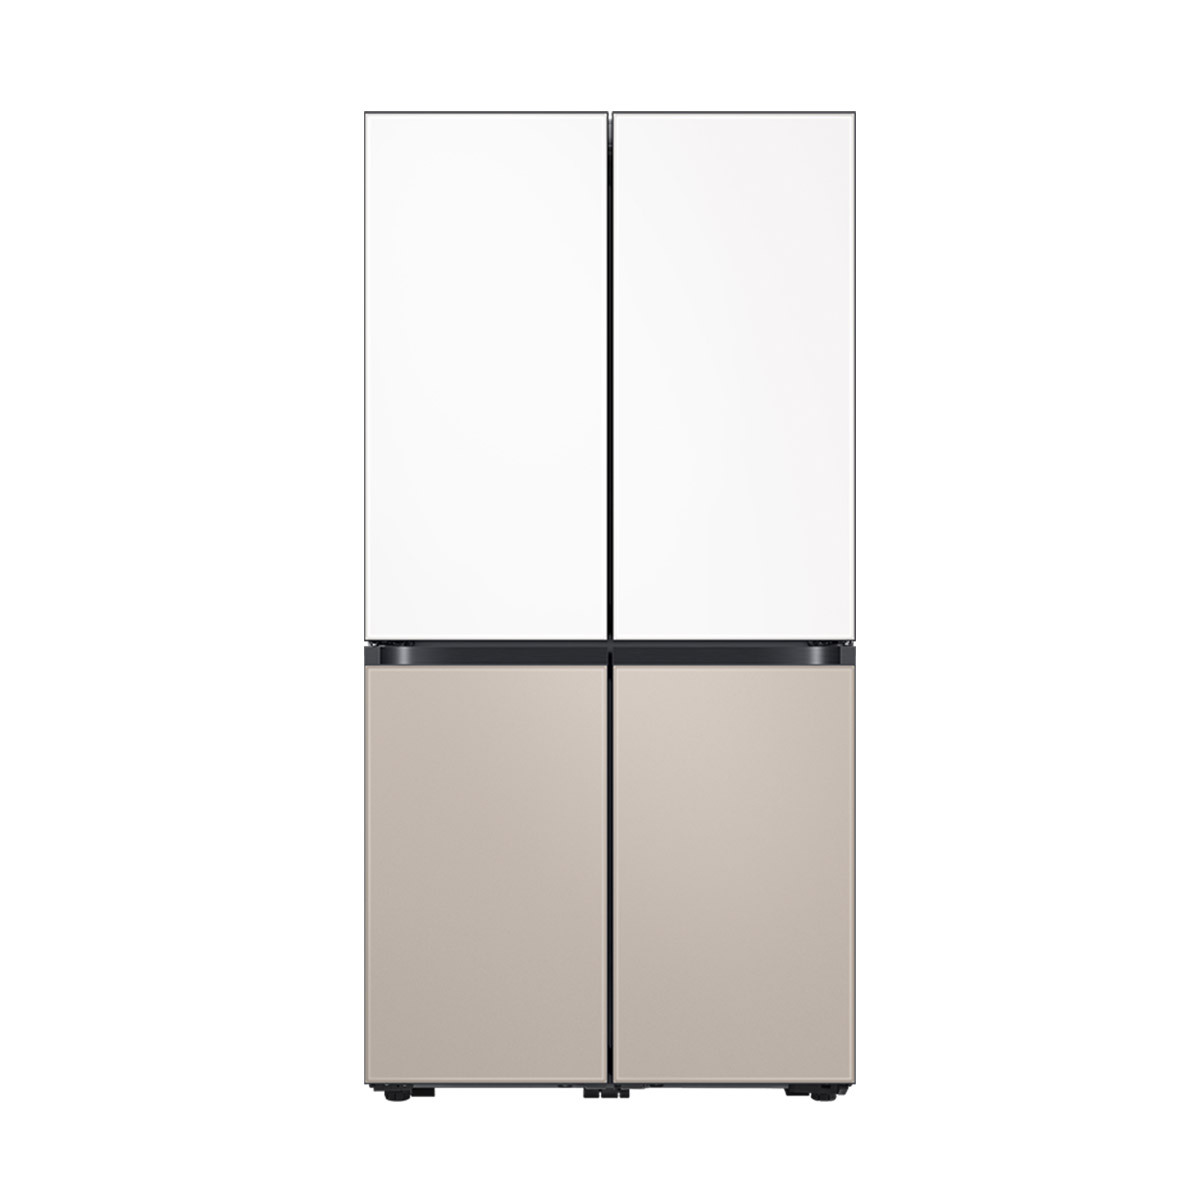 삼성 비스포크 쇼케이스 냉장고 868L